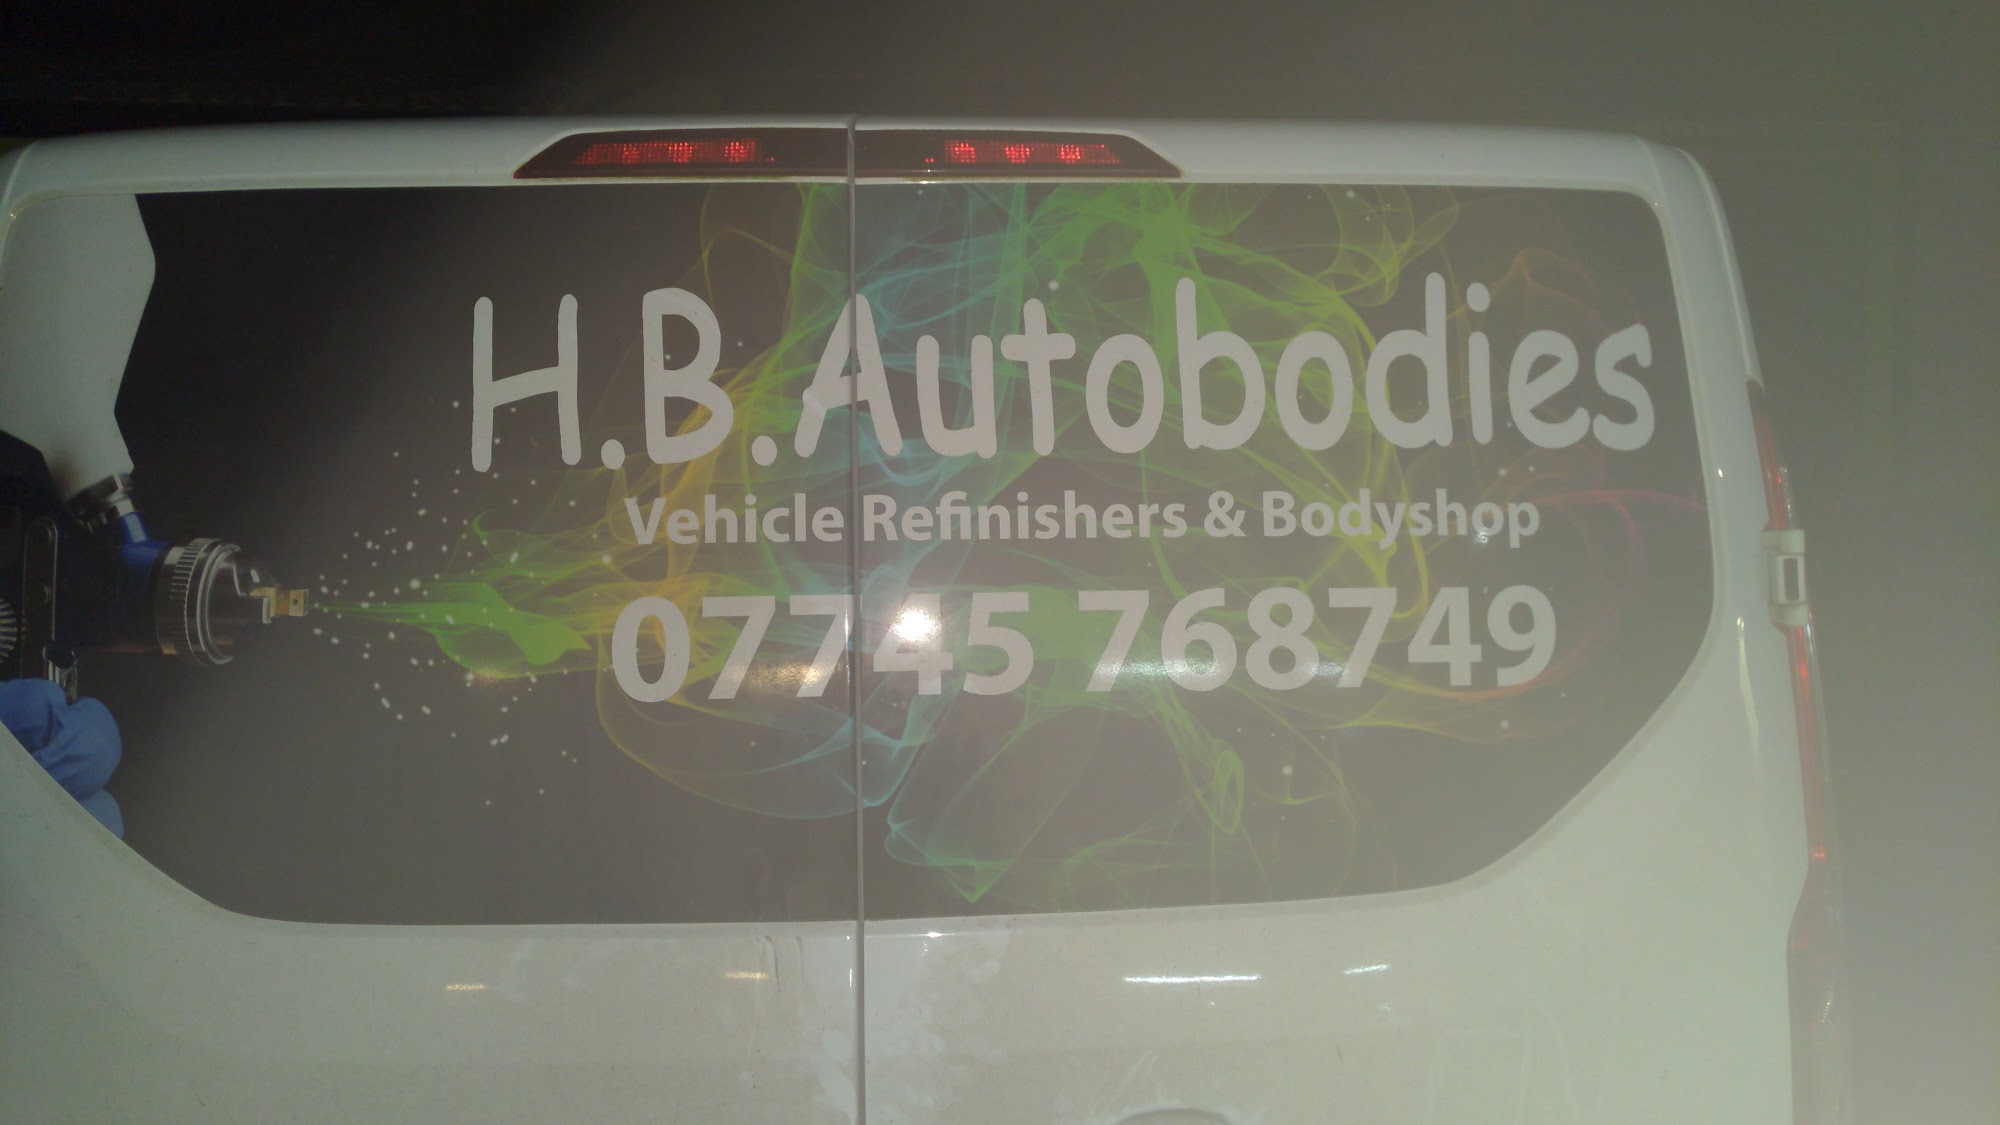 H B Autobodies